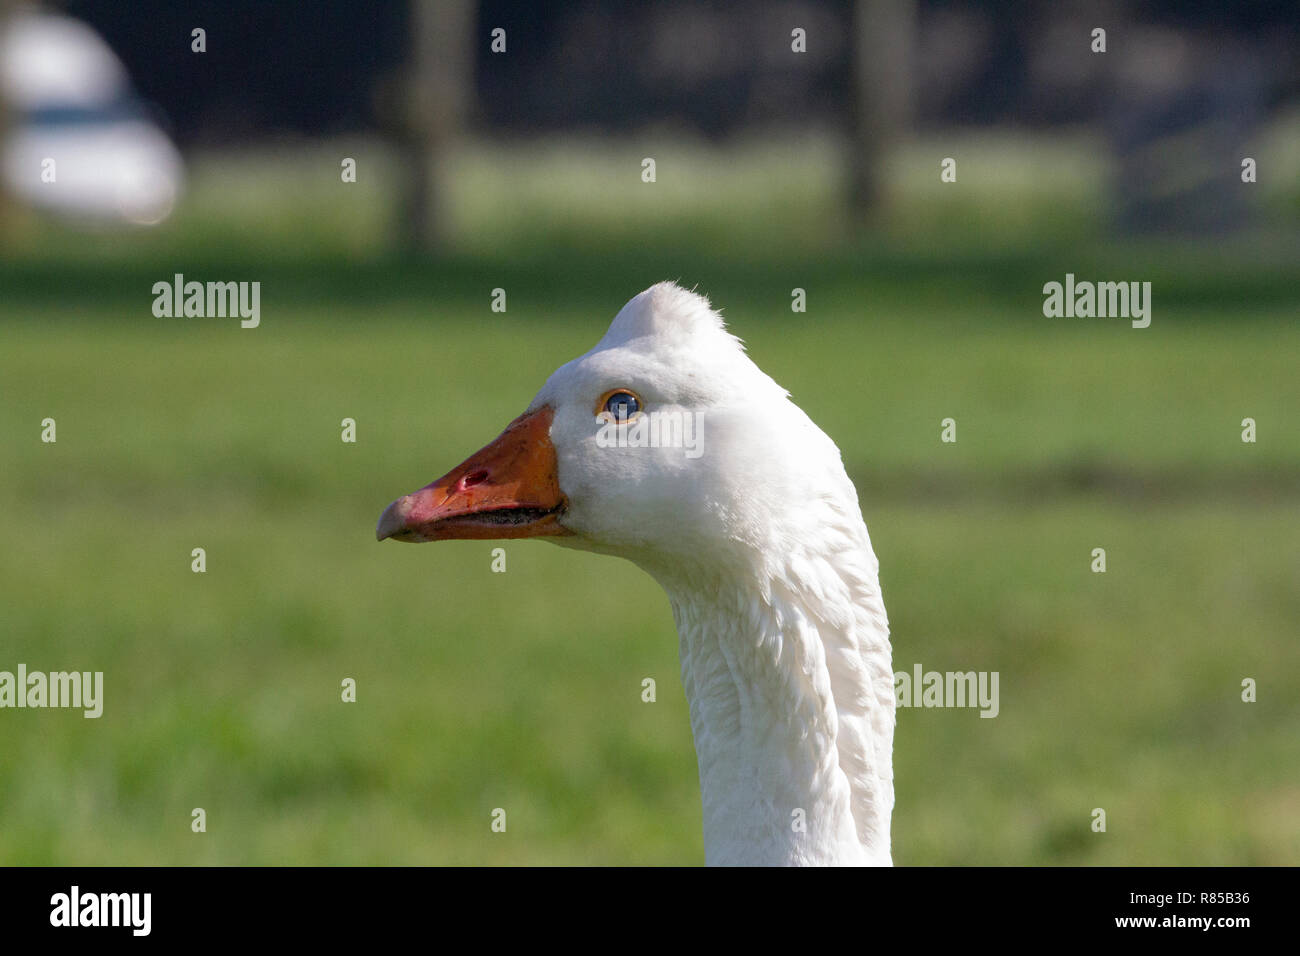 White goose, Emden goose, with orange beak and hump on his head. Stock Photo